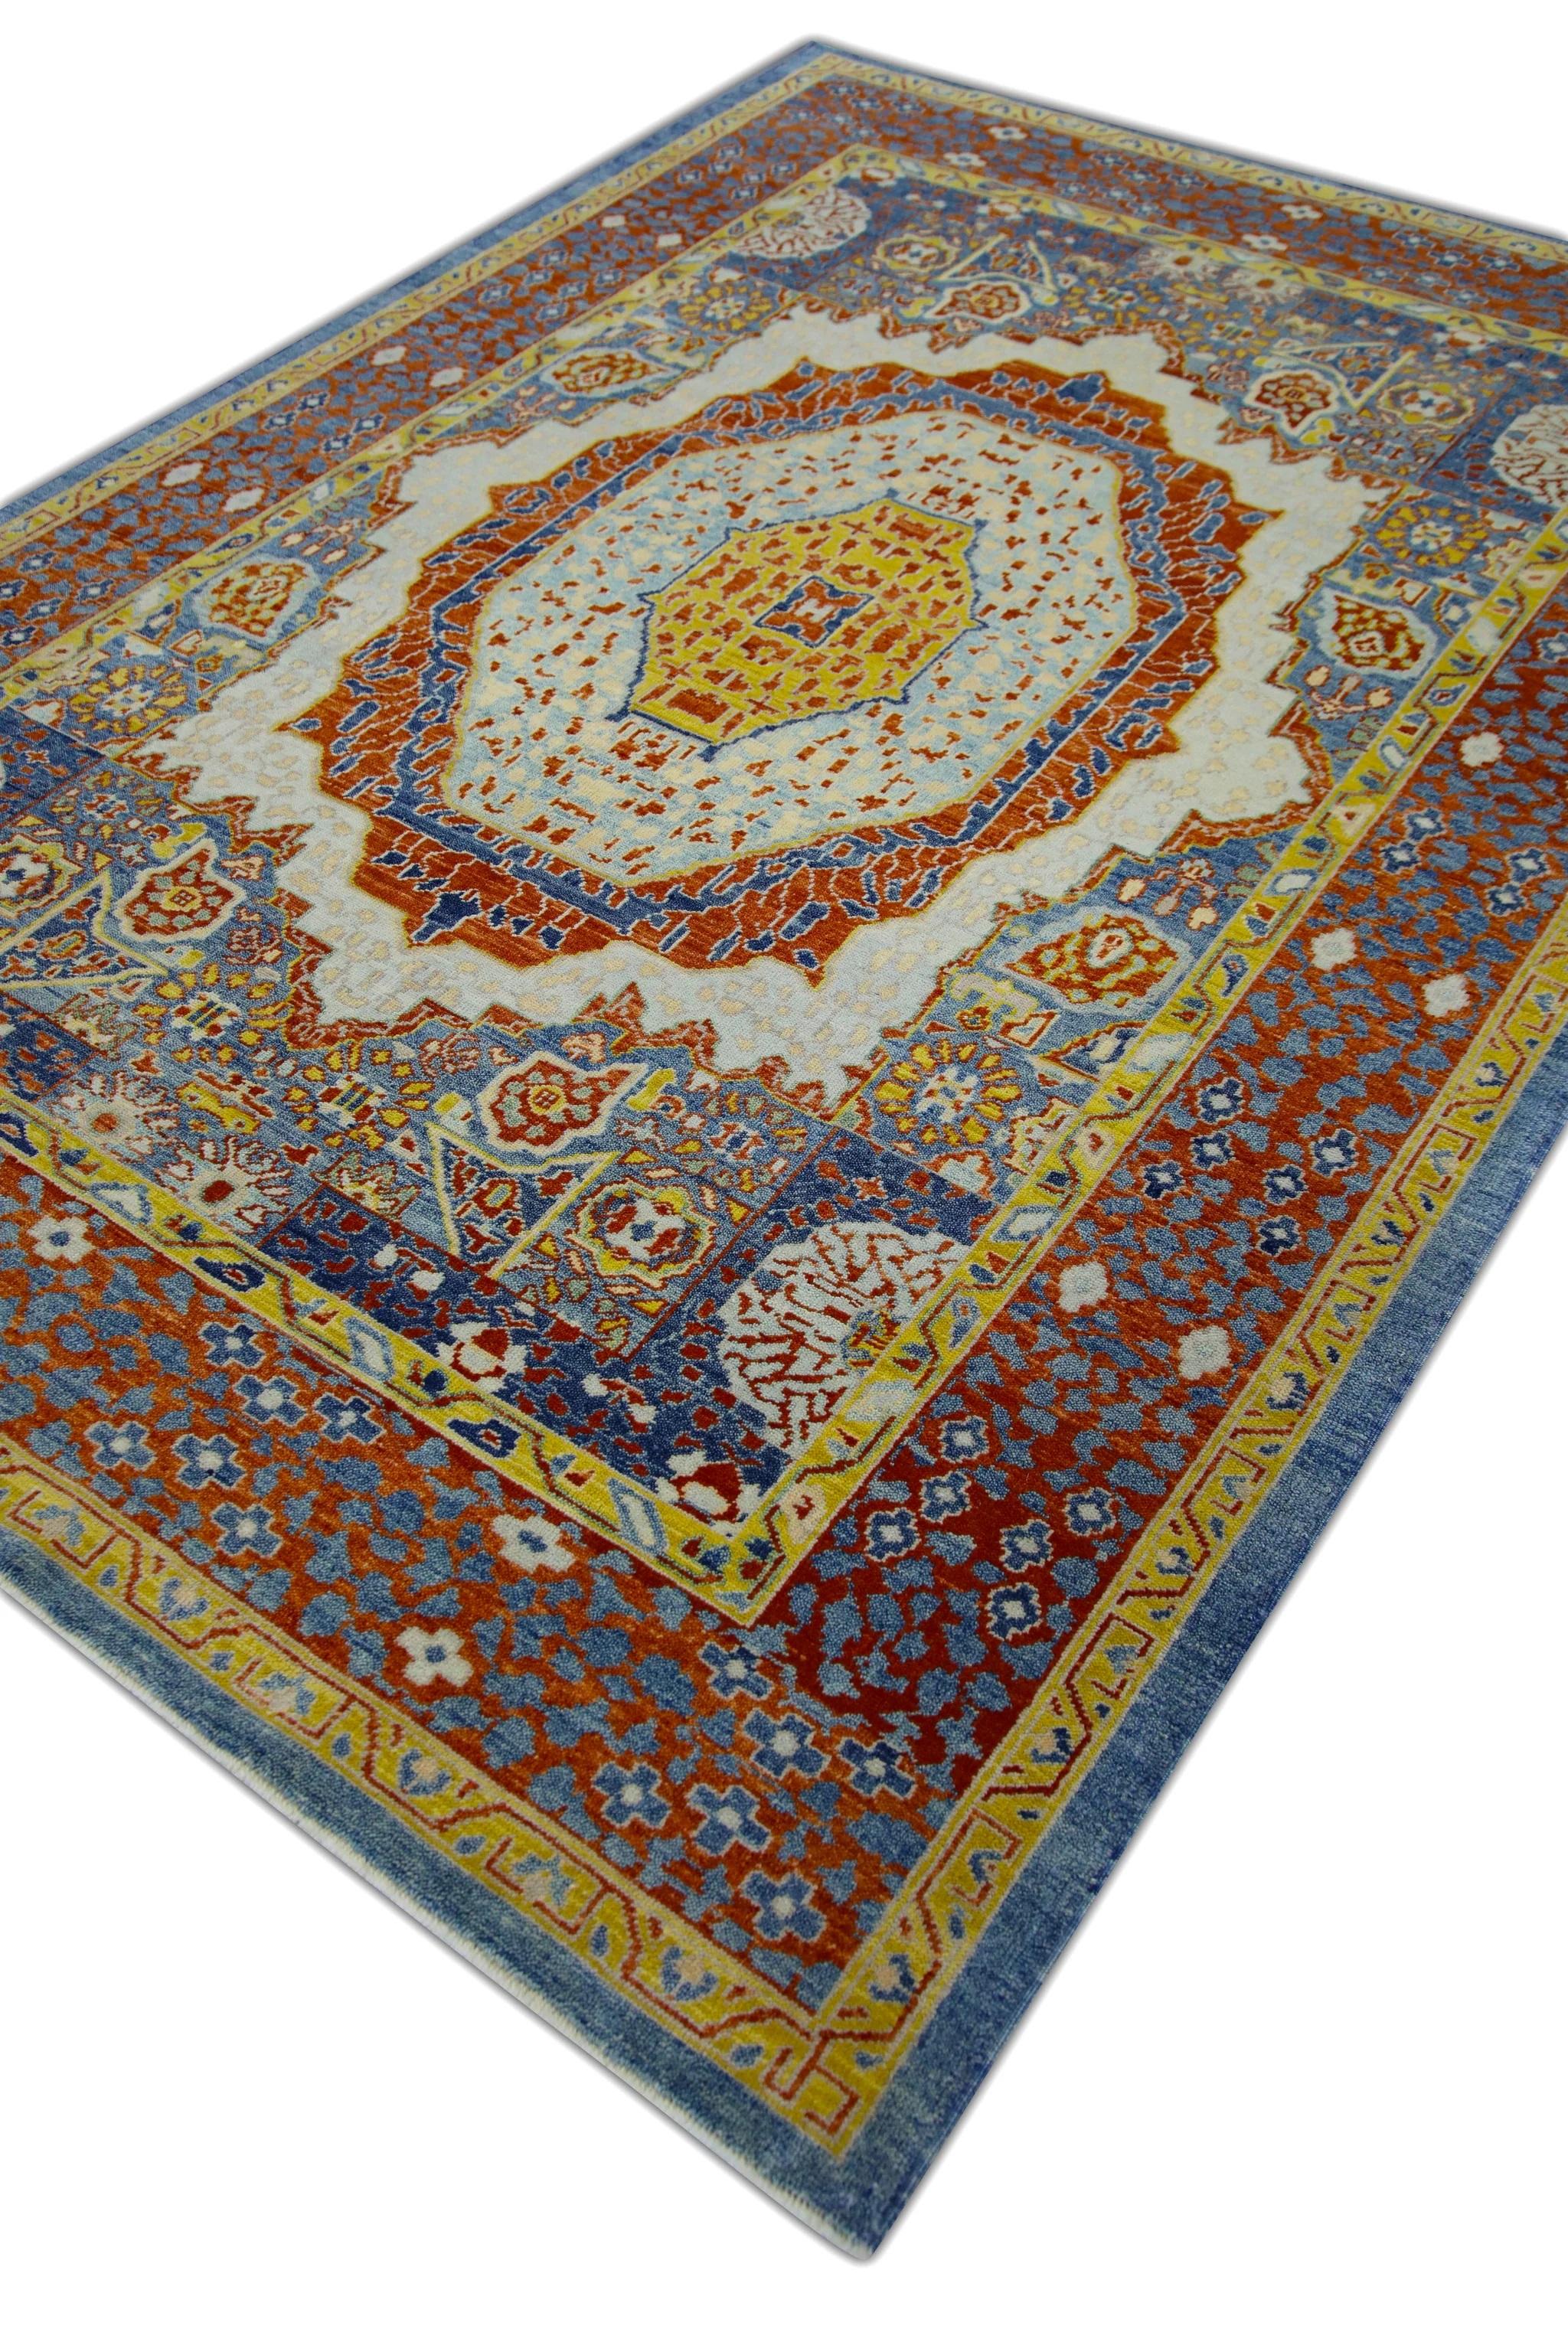 Dieser moderne, fein gewebte türkische Oushak-Teppich ist ein atemberaubendes Kunstwerk, das von erfahrenen Kunsthandwerkern mit traditionellen Techniken handgeknüpft wurde. Der Teppich weist komplizierte Muster und eine weiche Farbpalette auf, die